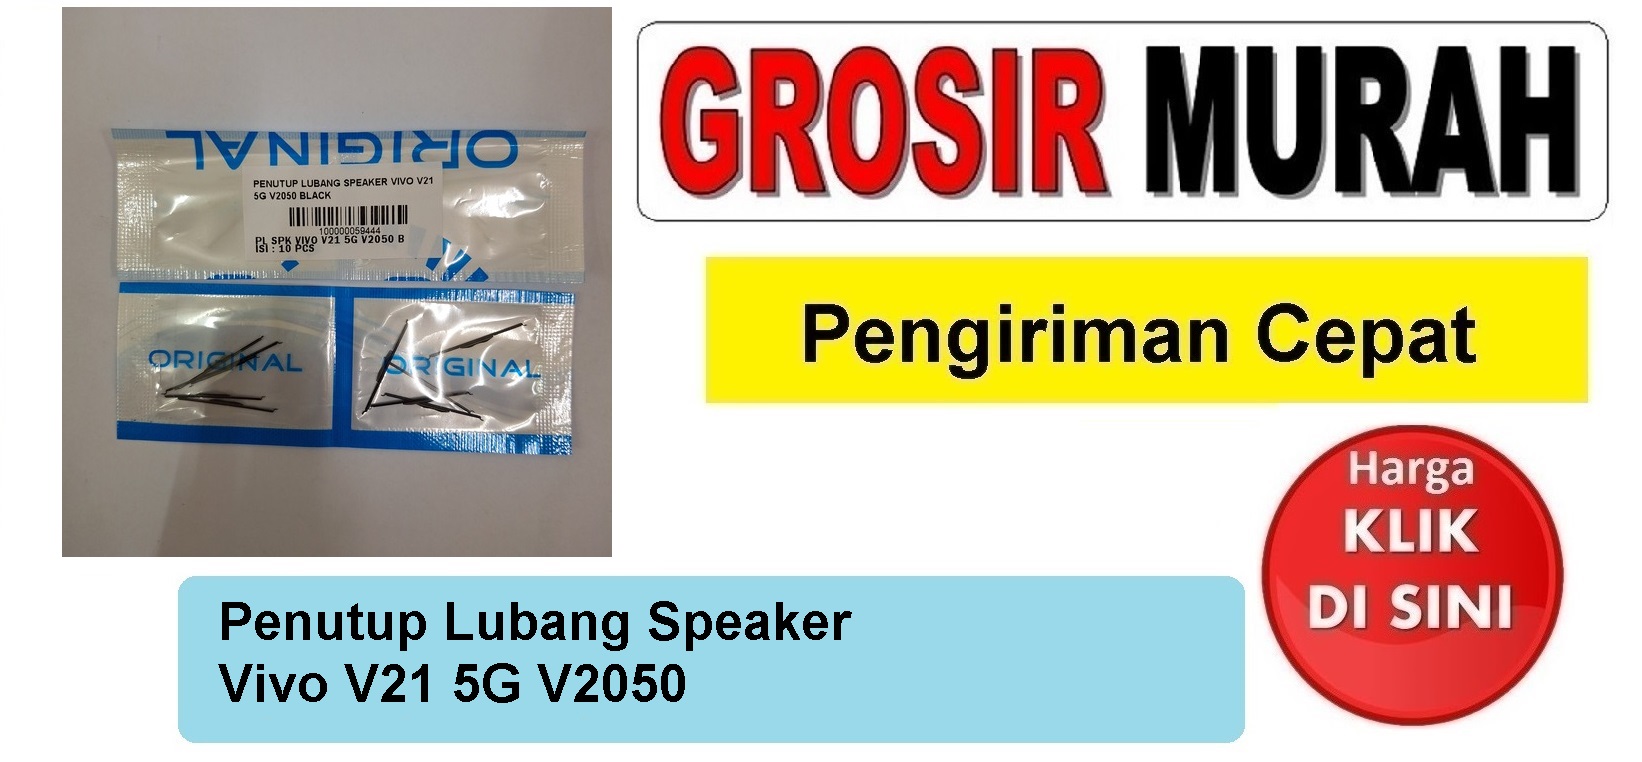 Penutup Lubang Speaker Vivo V21 5G V2050